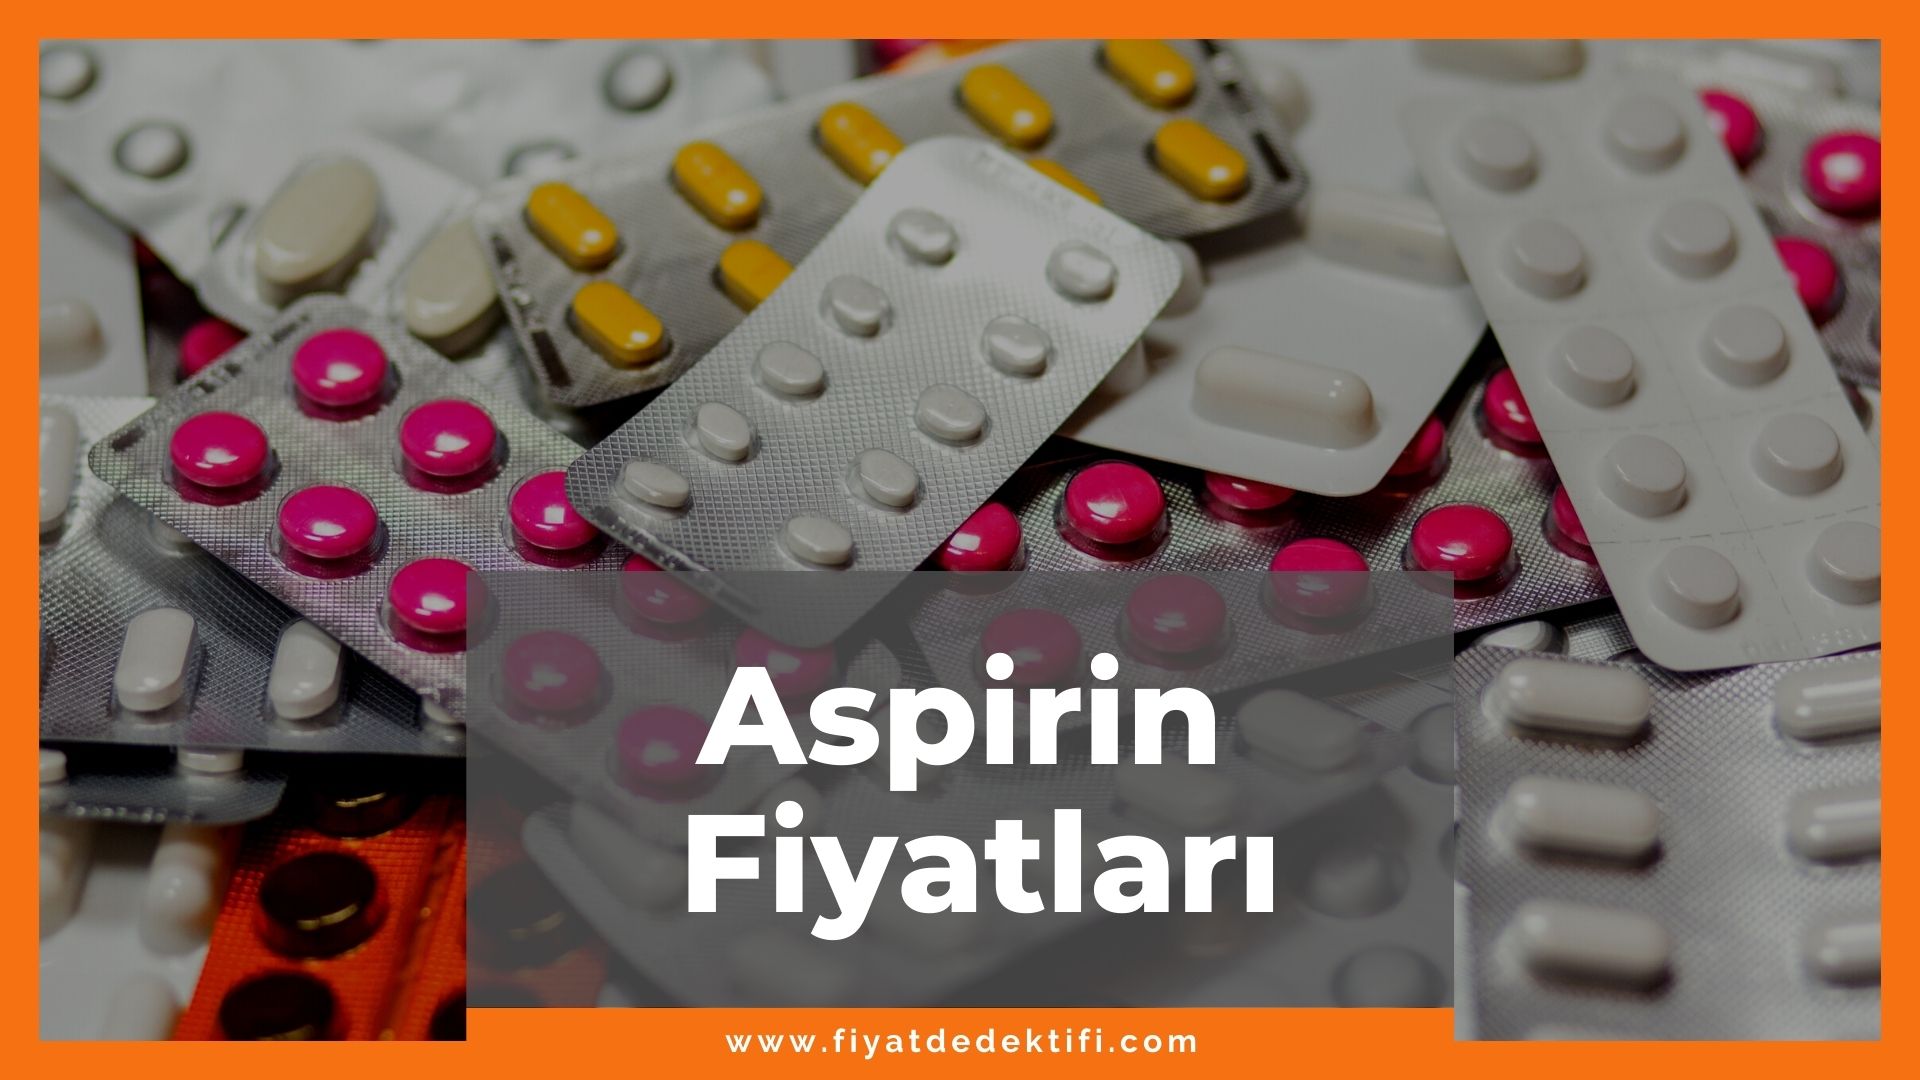 Aspirin Fiyat 2021, Aspirin Fiyatı, Aspirin 100 mg Fiyatı, aspirin zamlı fiyat, aspirin zamlandı mı, aspirin nedir ne işe yarar